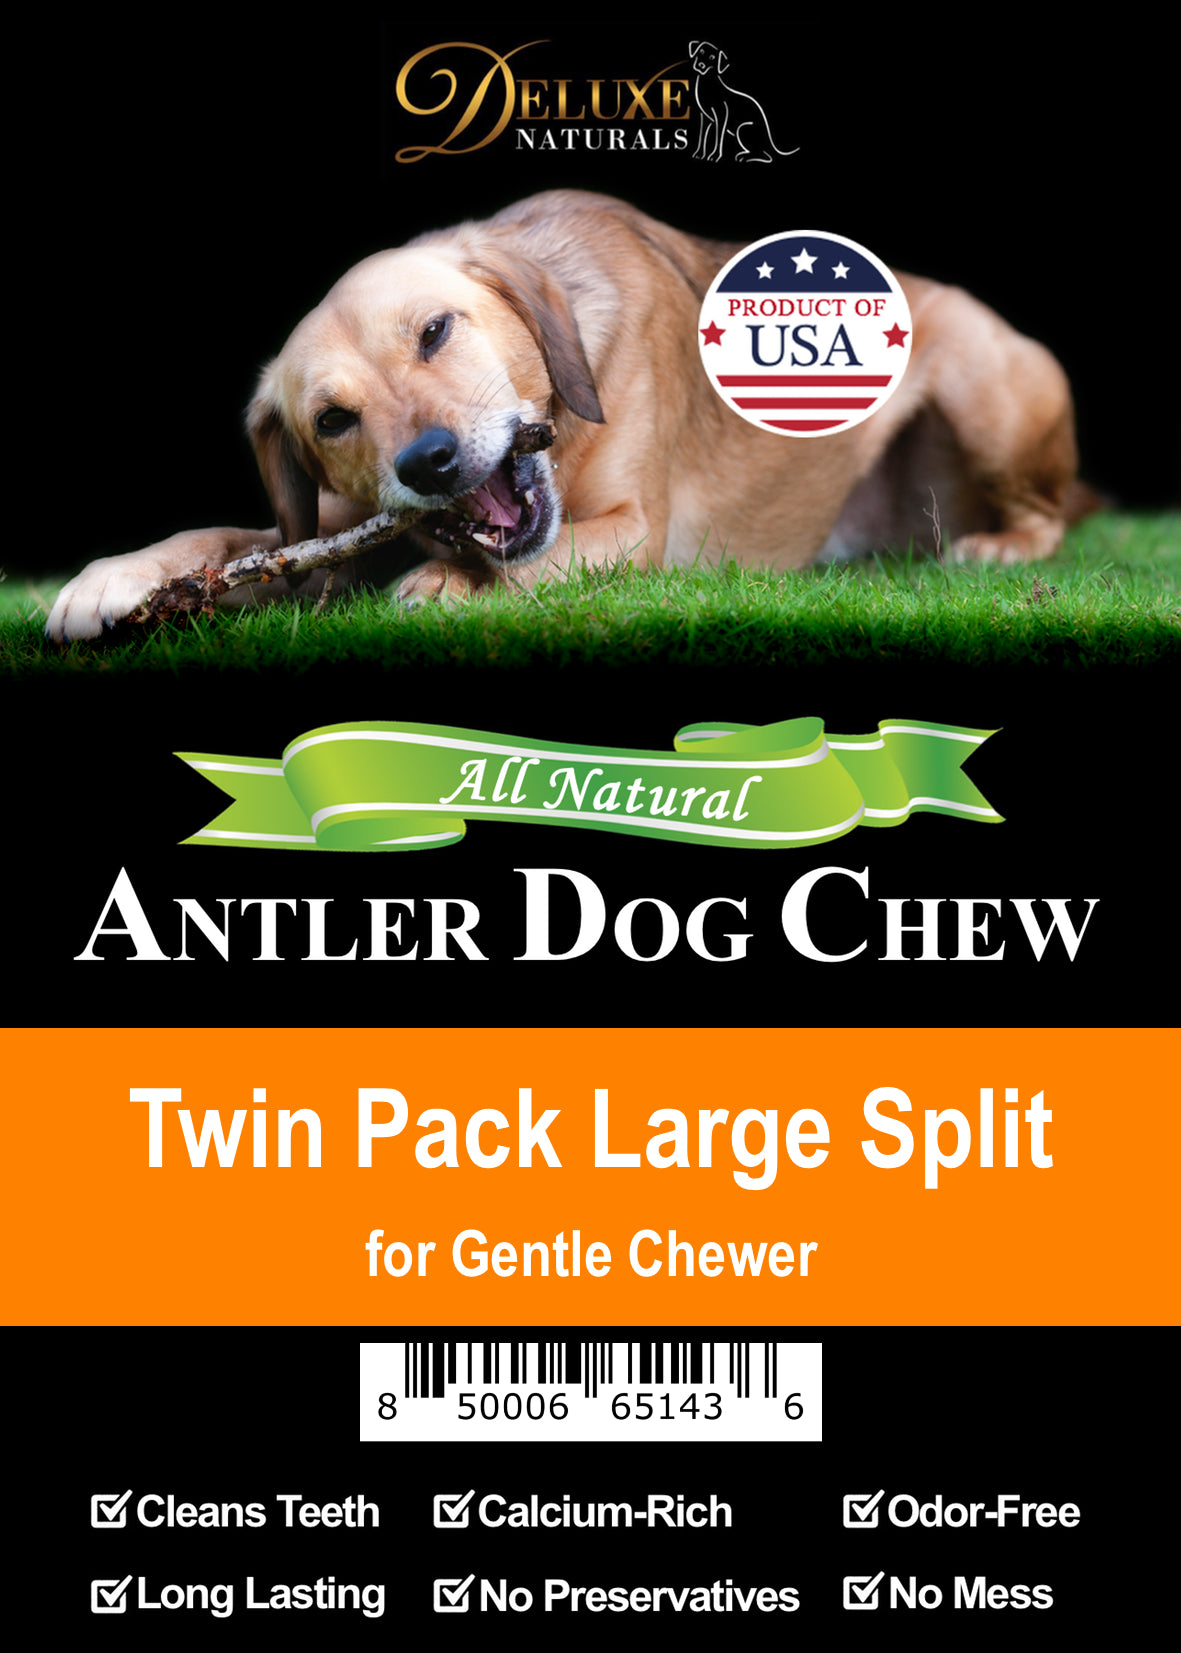 Deluxe Naturals Twin Pack Elk Antler Dog Chew - Large Split